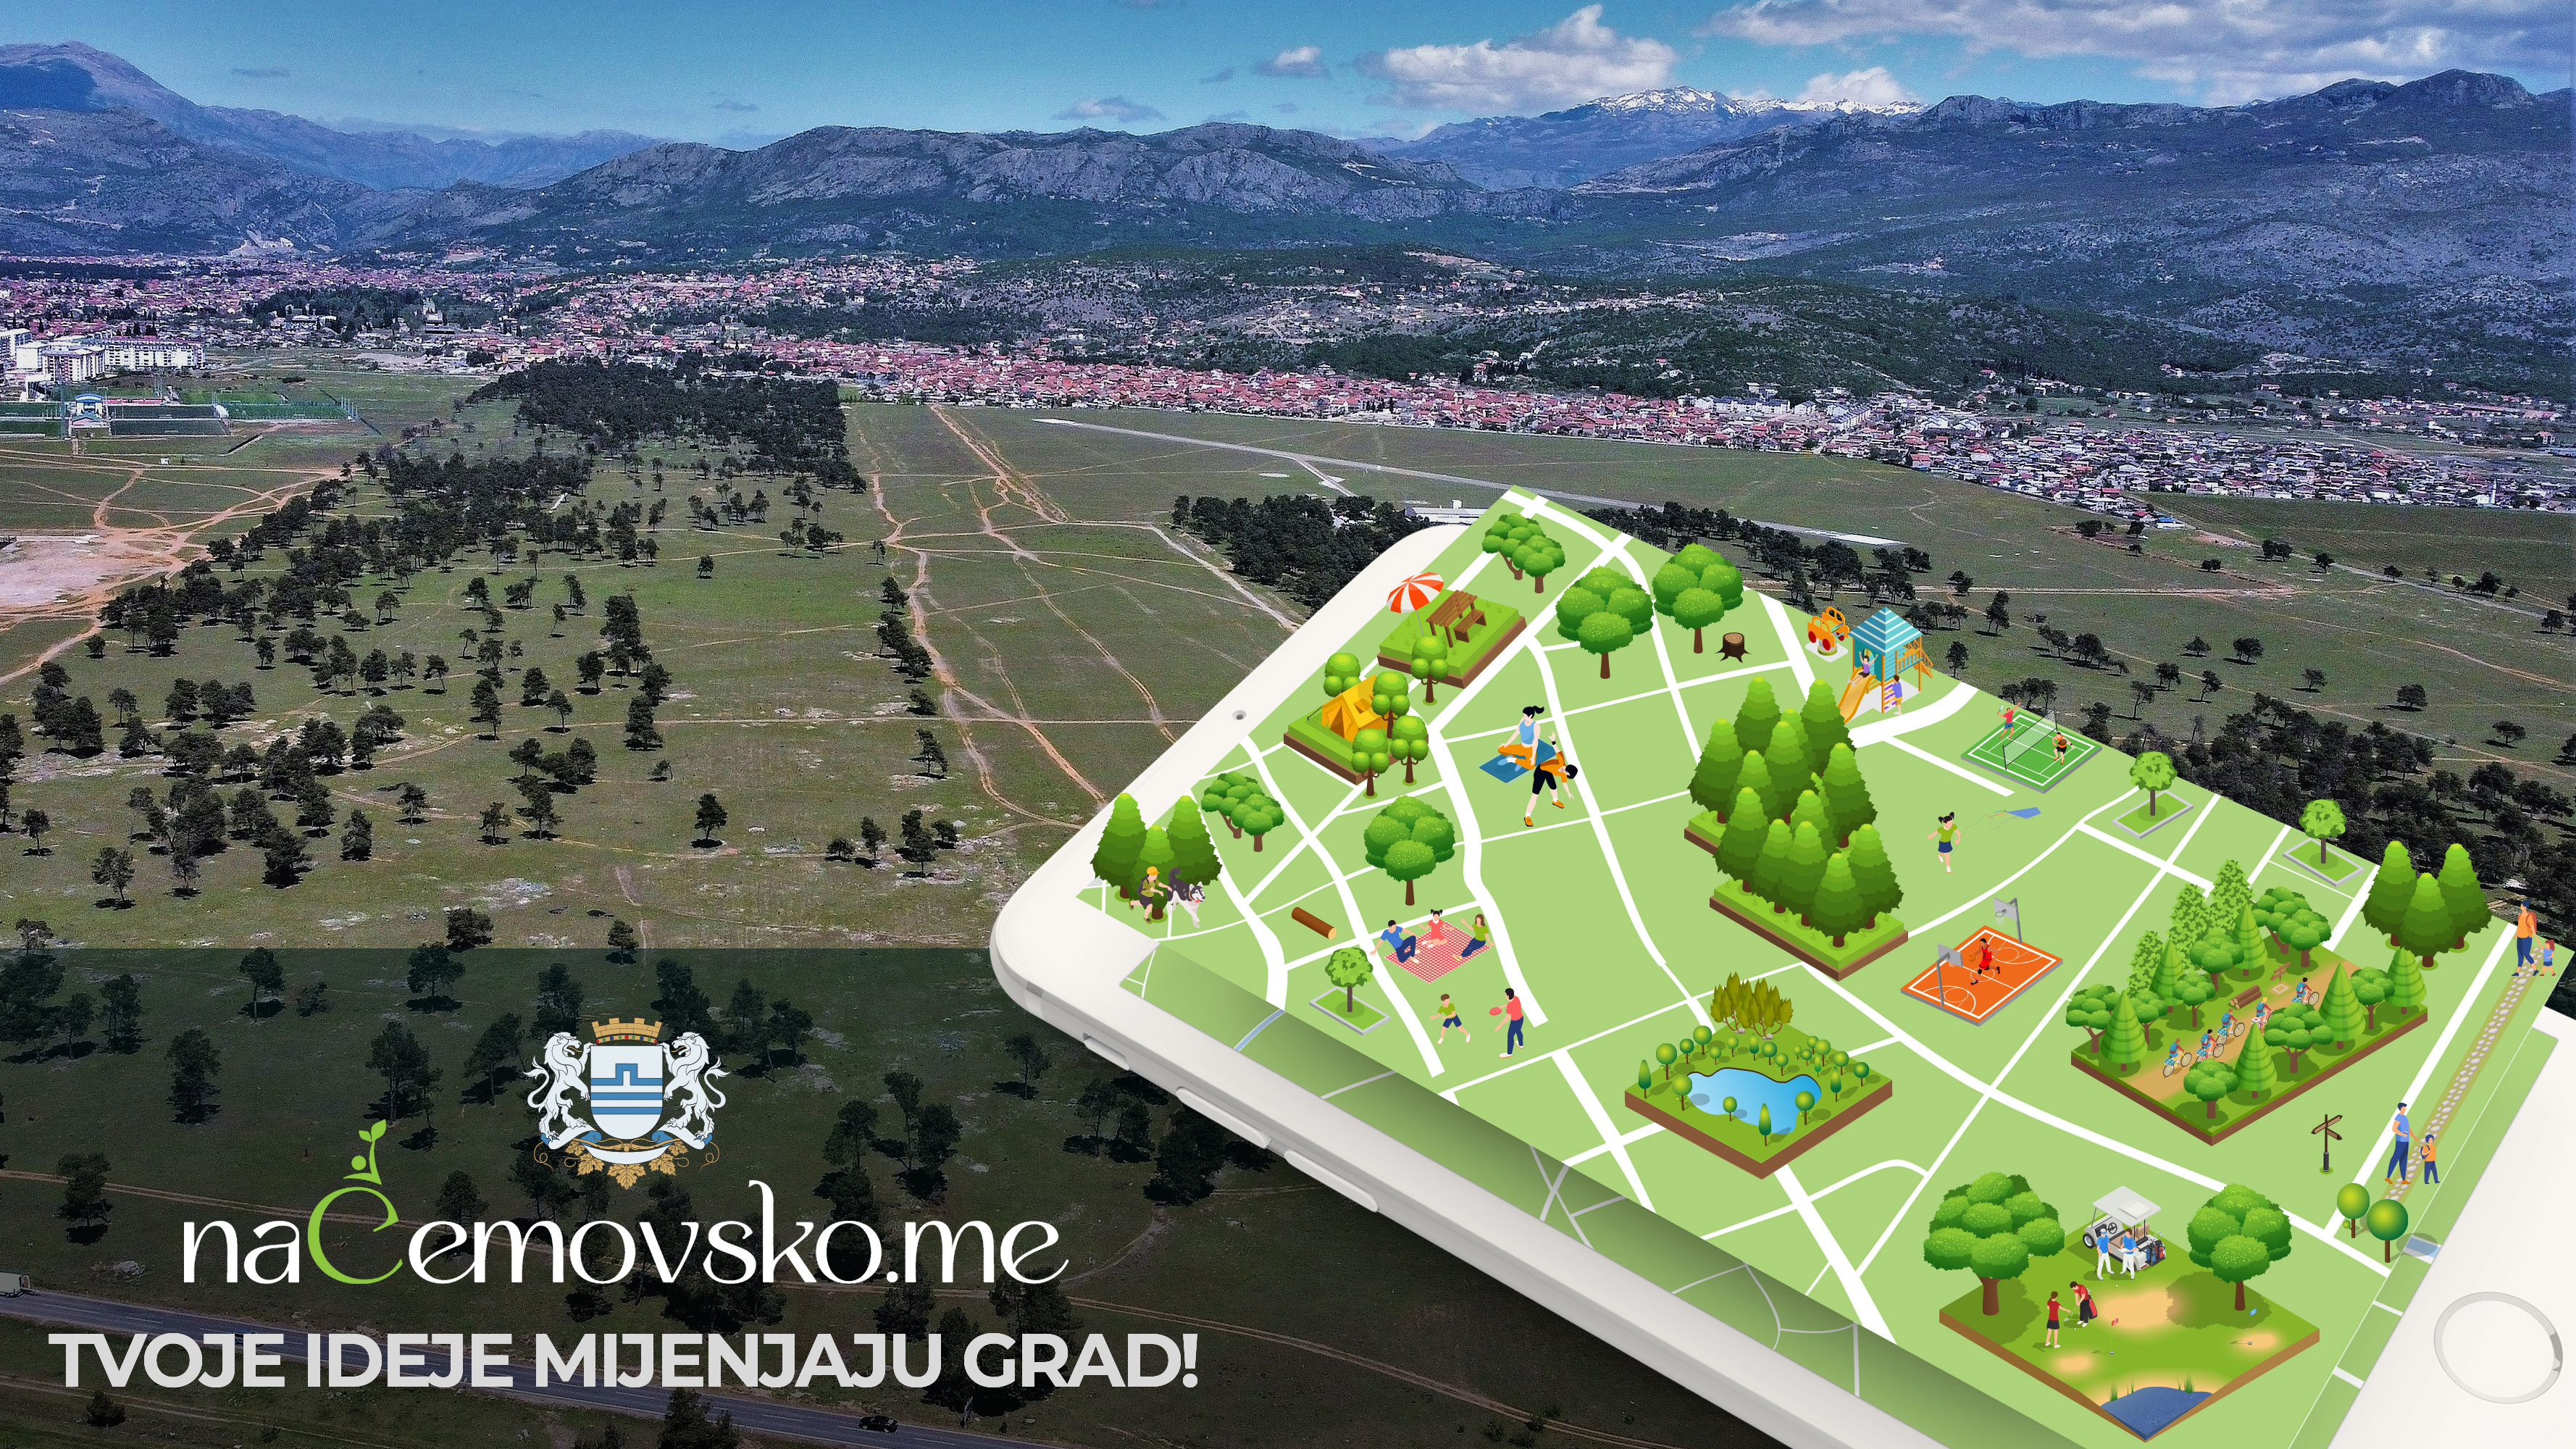 Gradski park na preko 40ha na Ćemovskom polju: Osmislimo sadržaje zajedno!